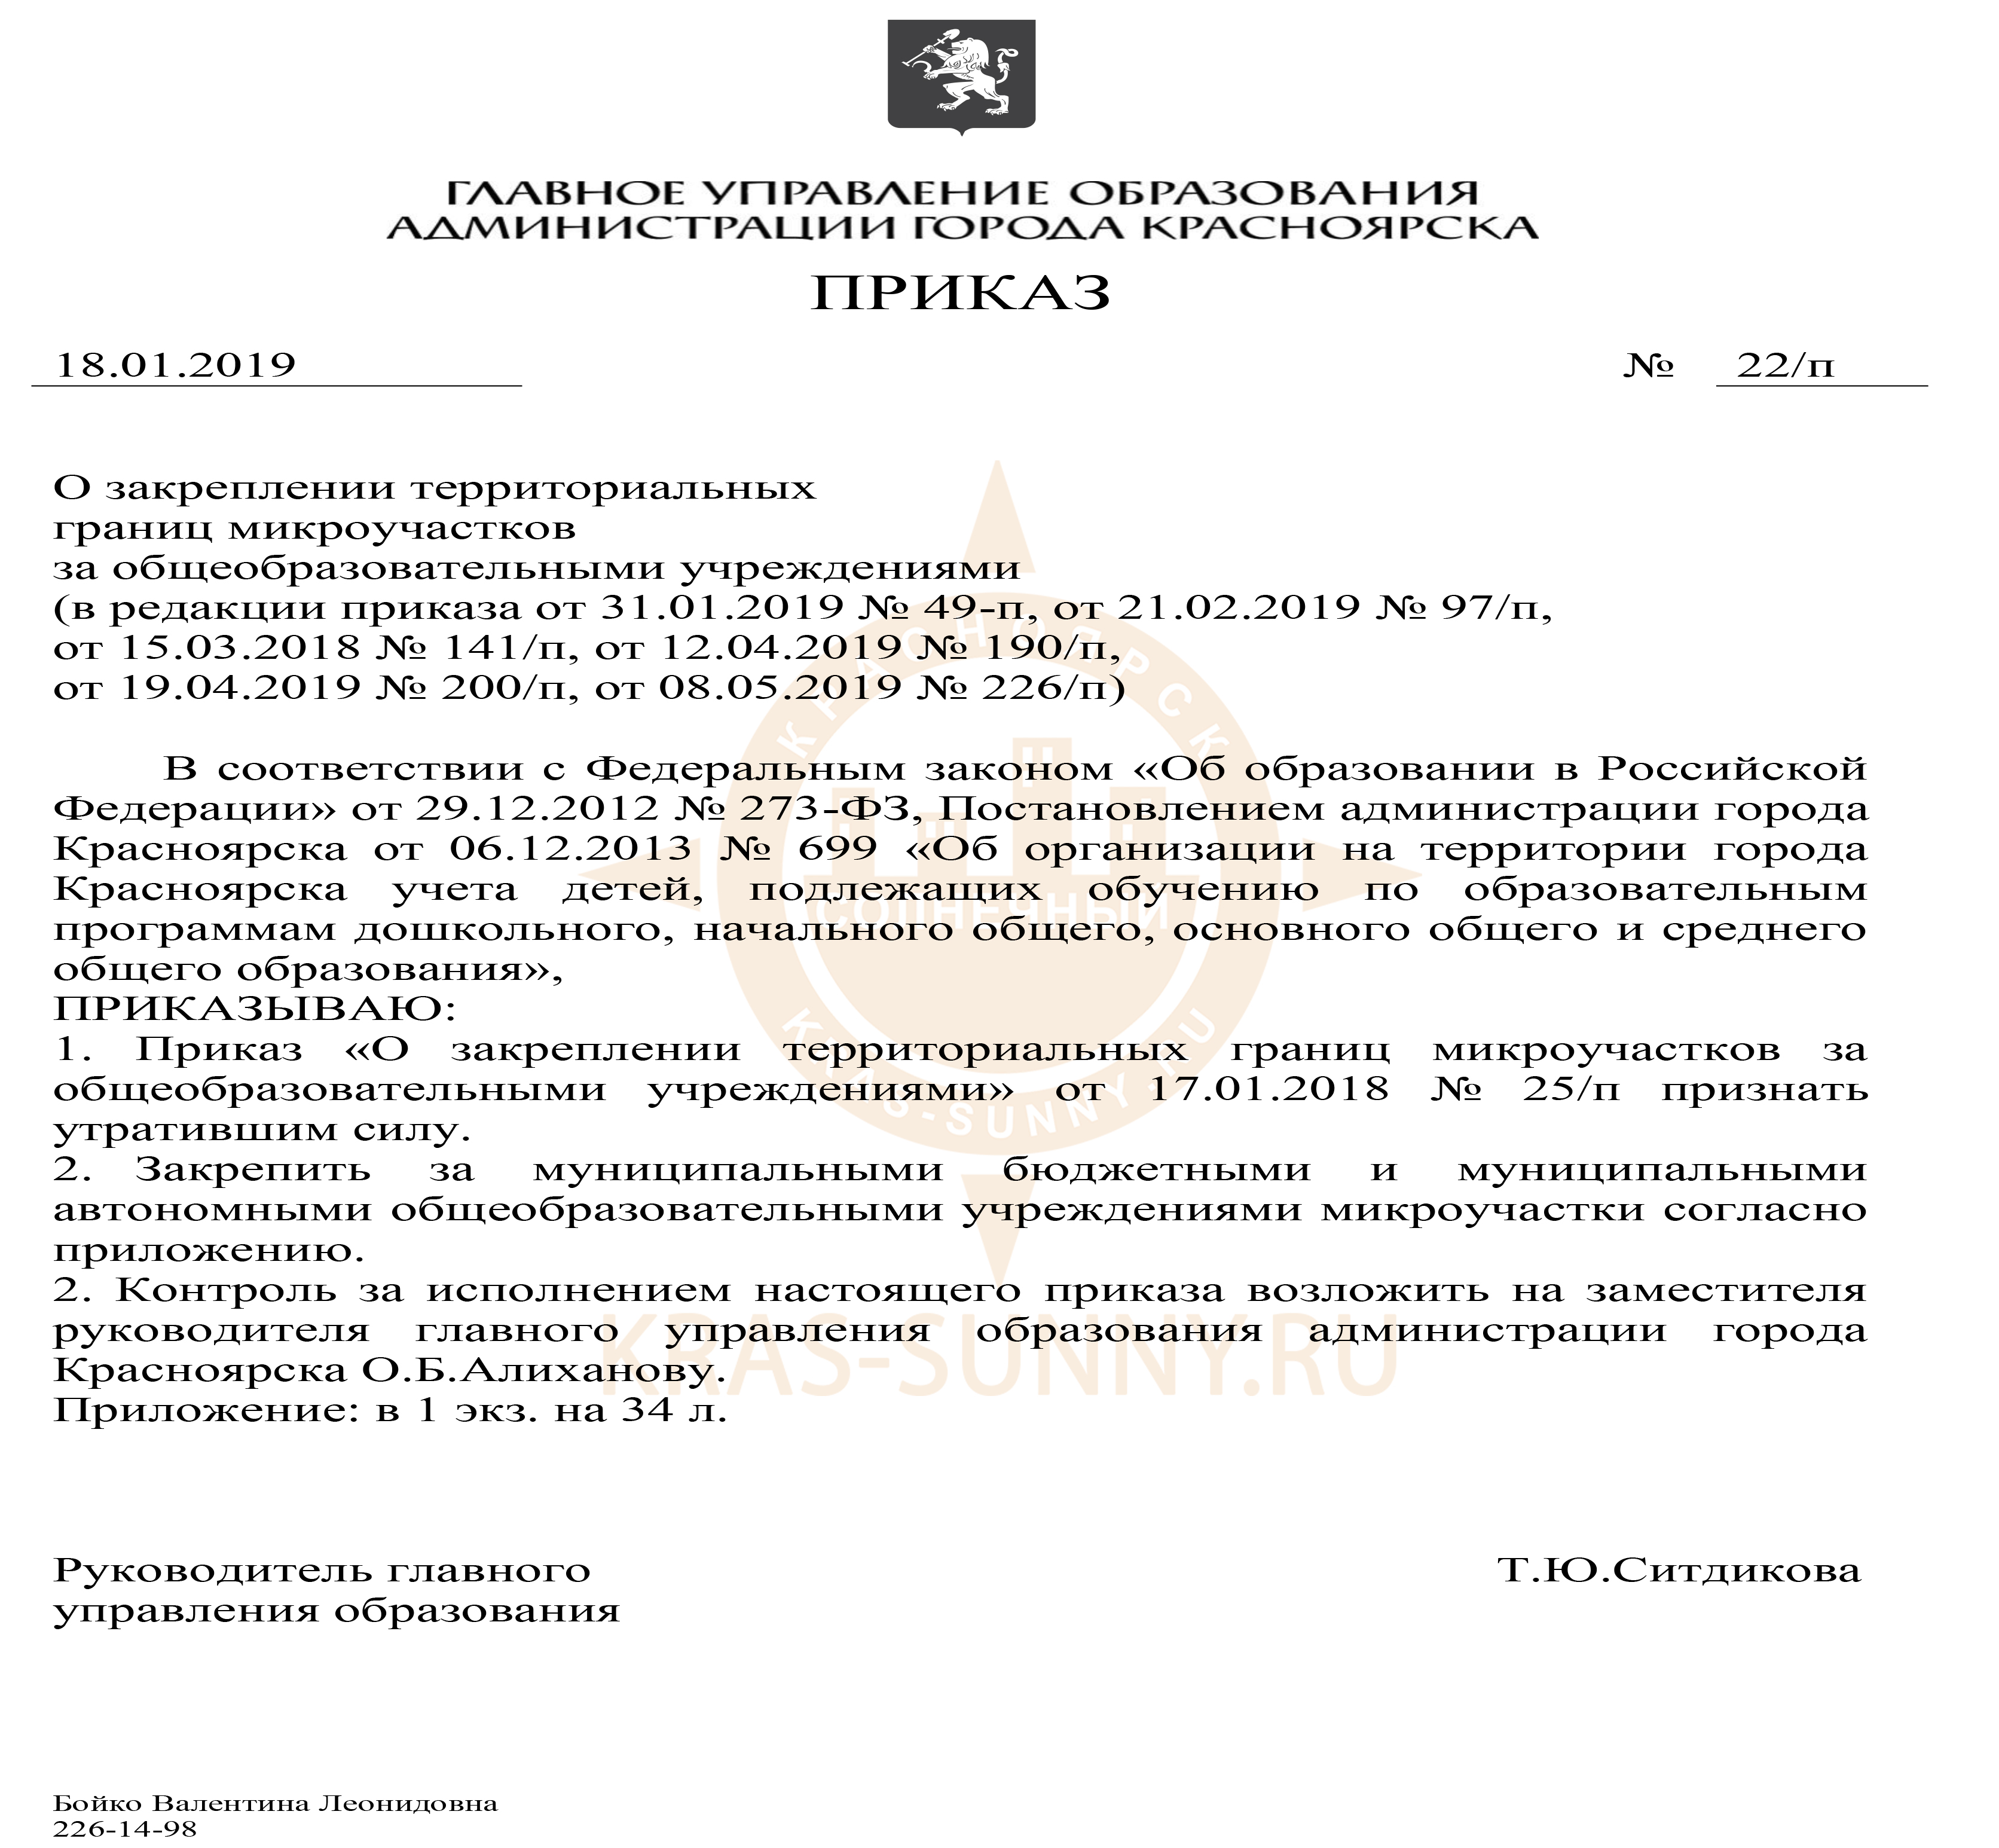 Список распределения в школы микрорайона Солнечный